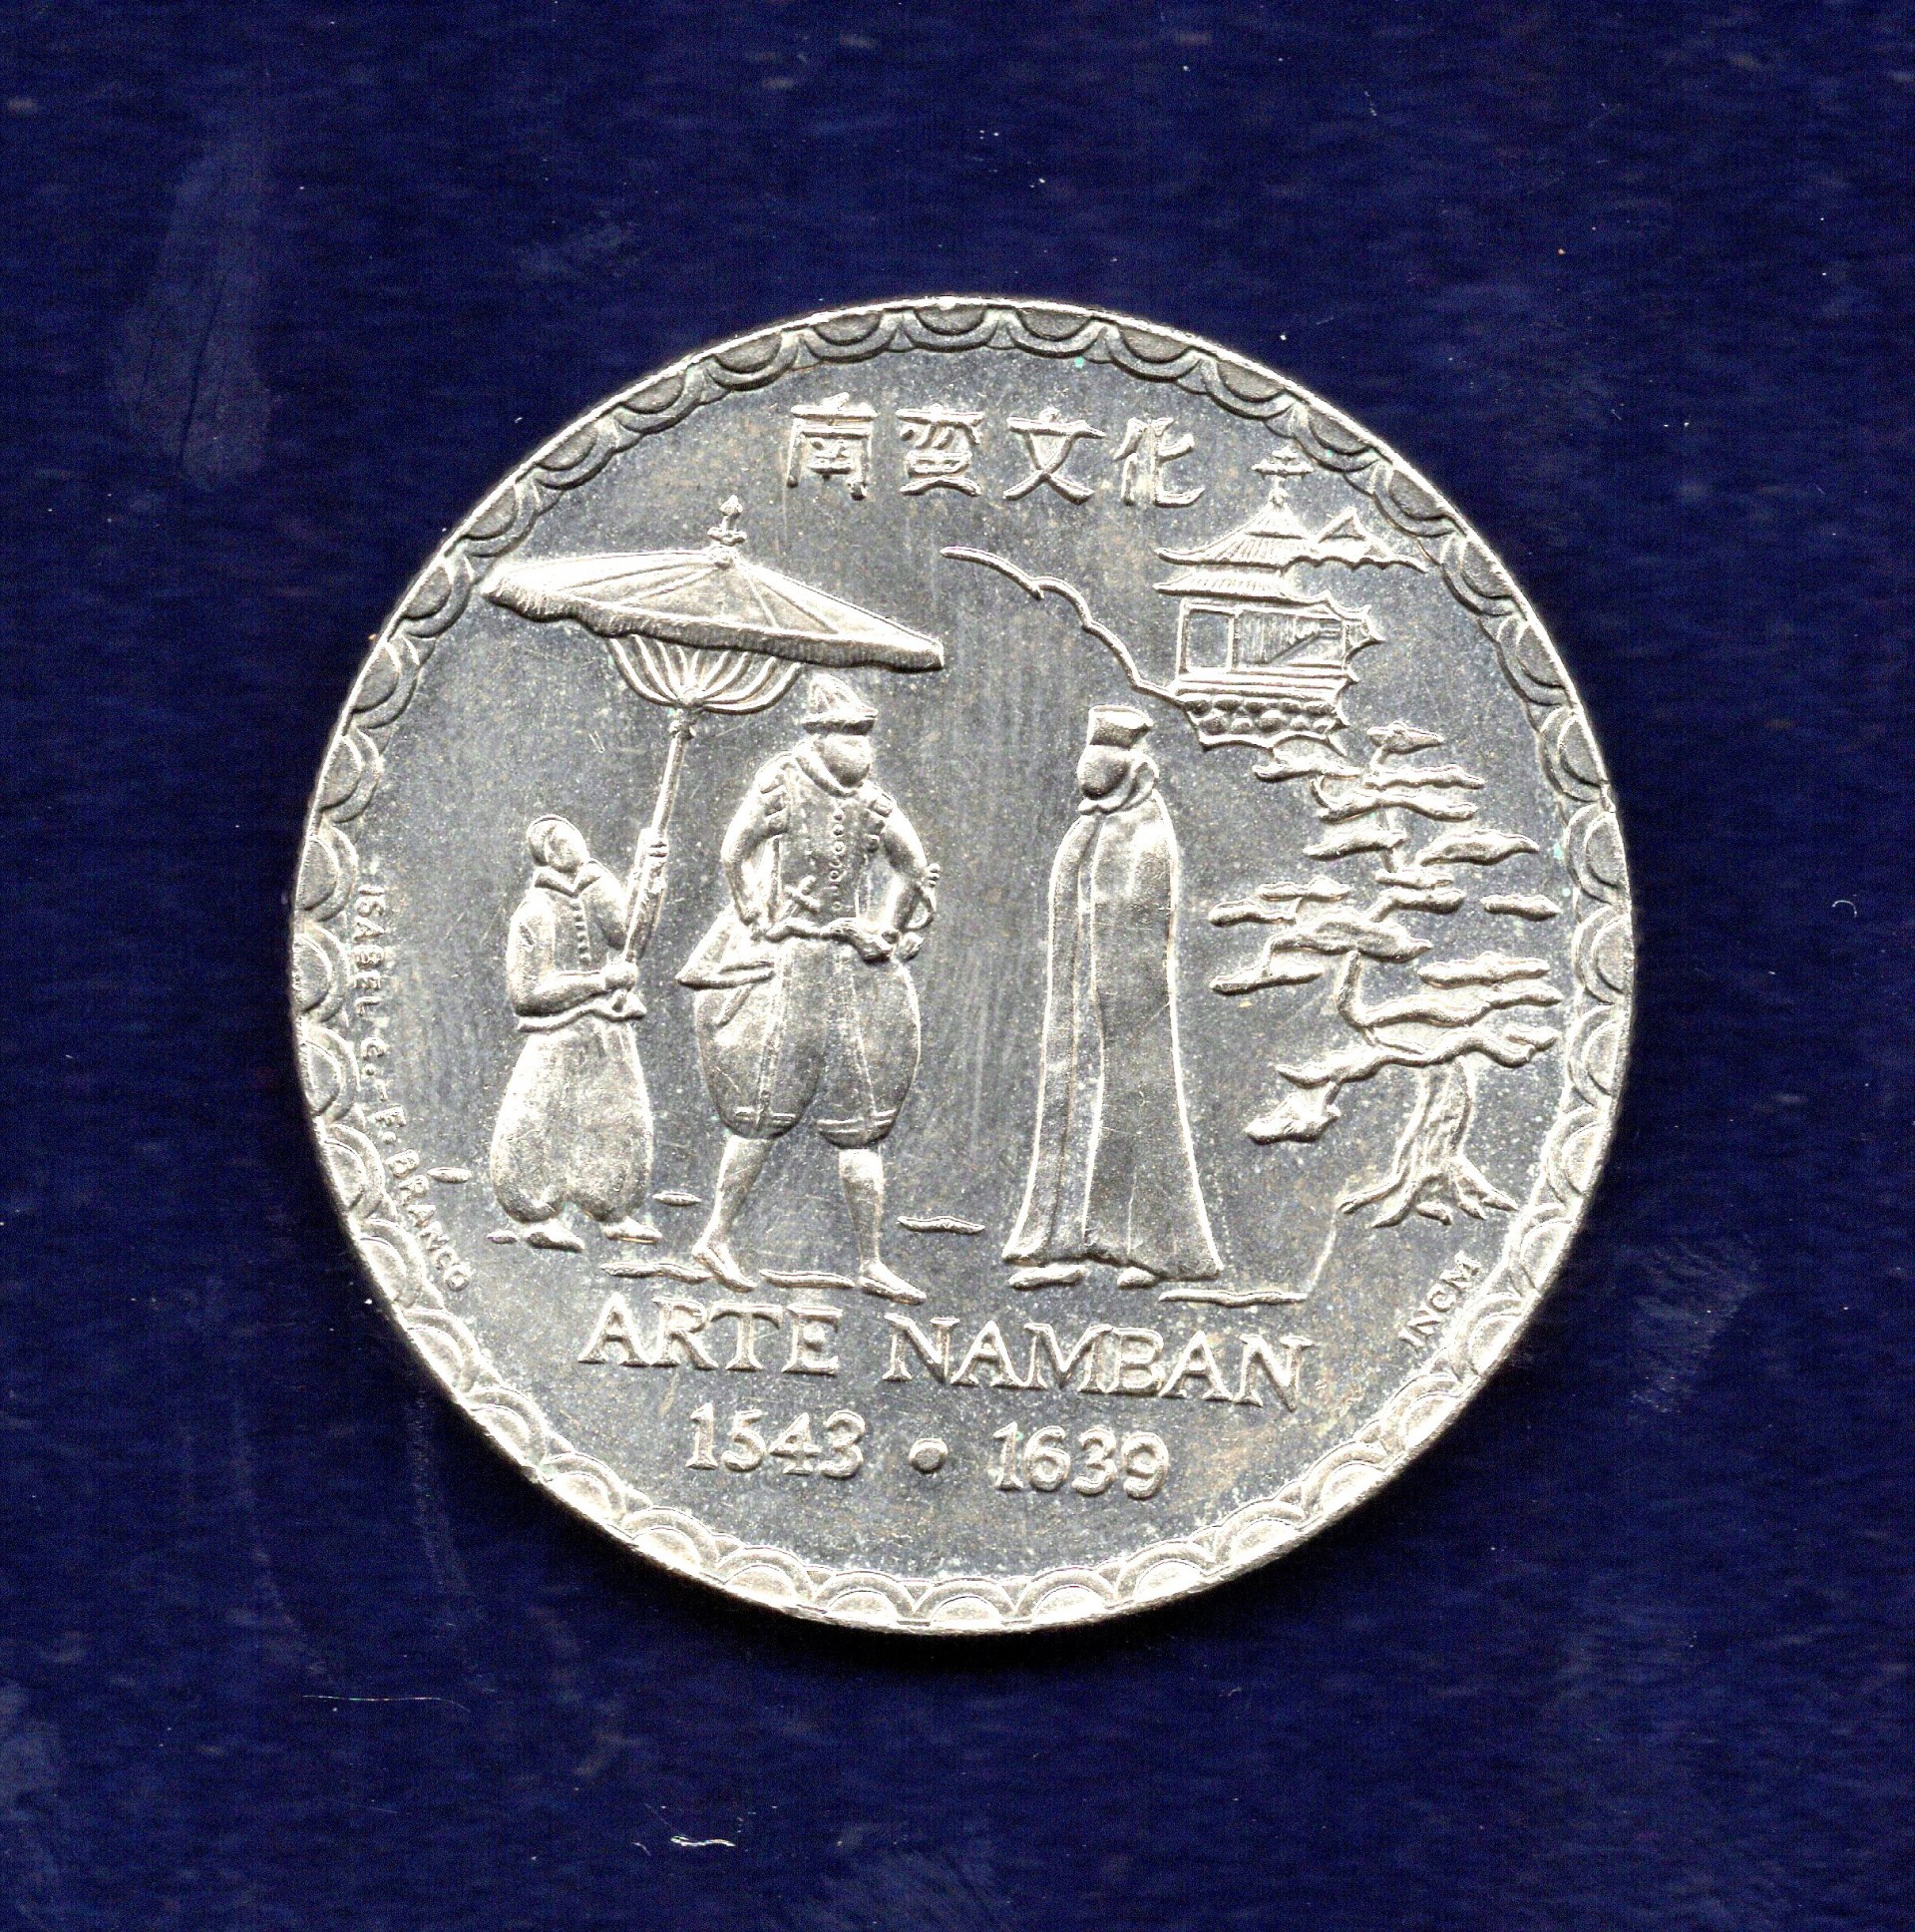 Coleção de moedas da República - Série IV dos Descobrimentos